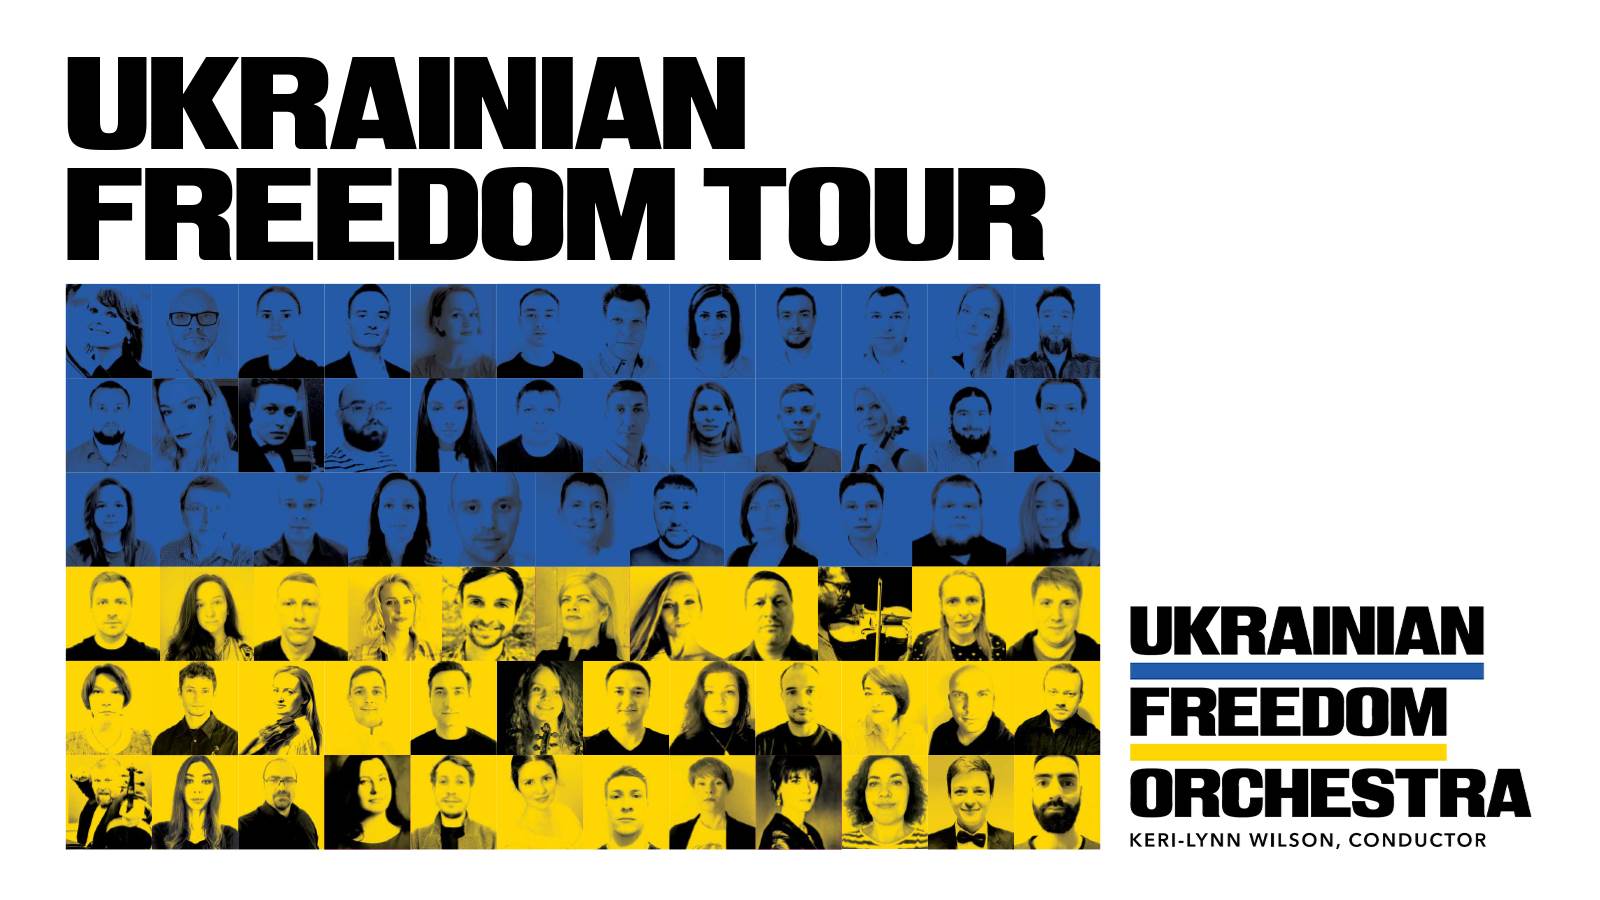 Ukrainian-Freedom-Orchestra